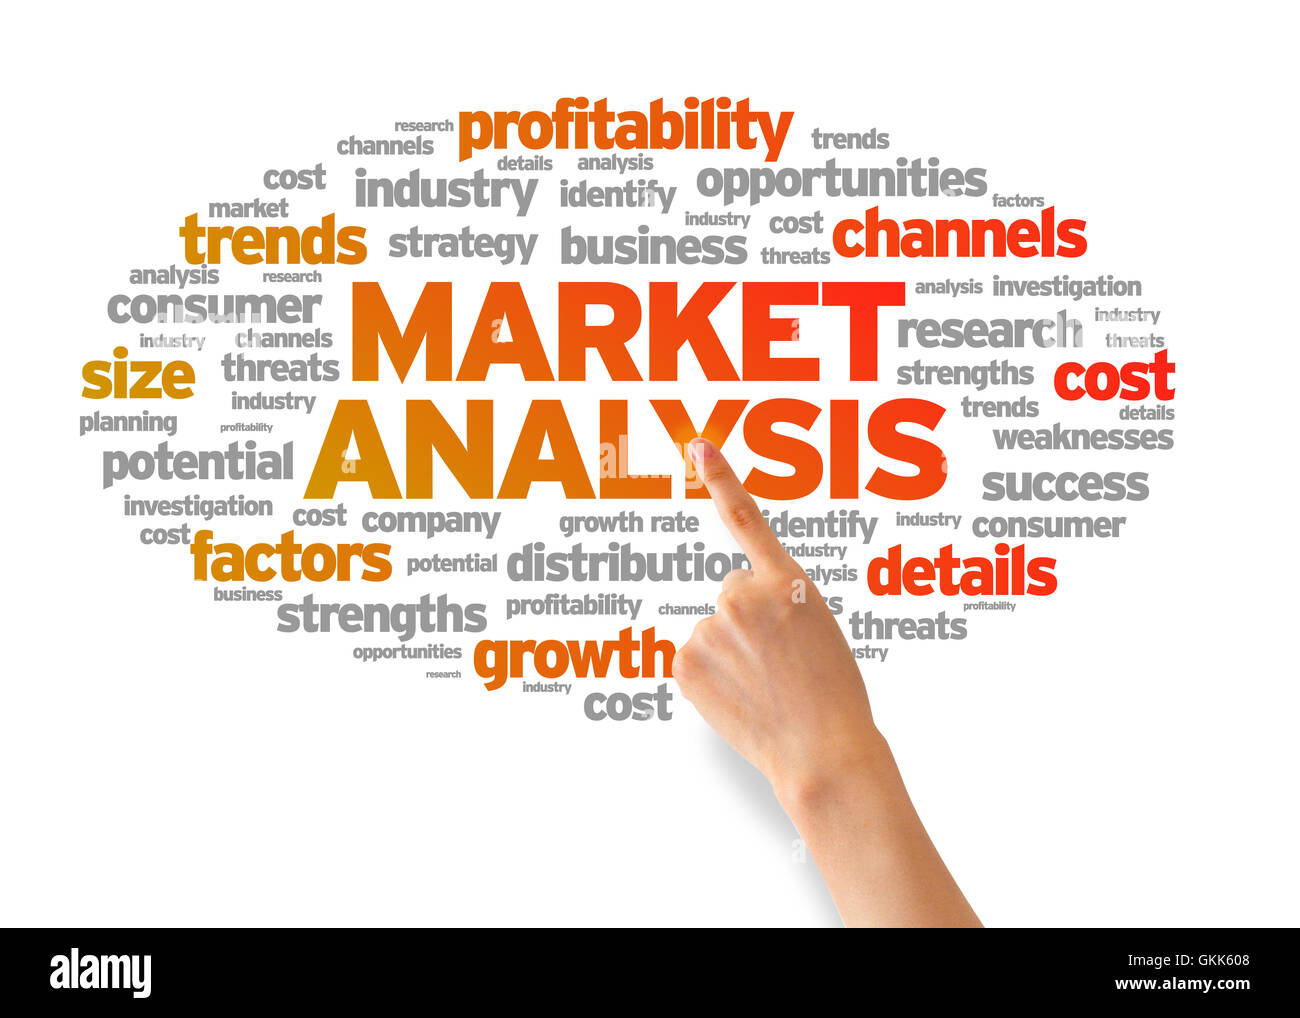 Market Analysis Stock Photo